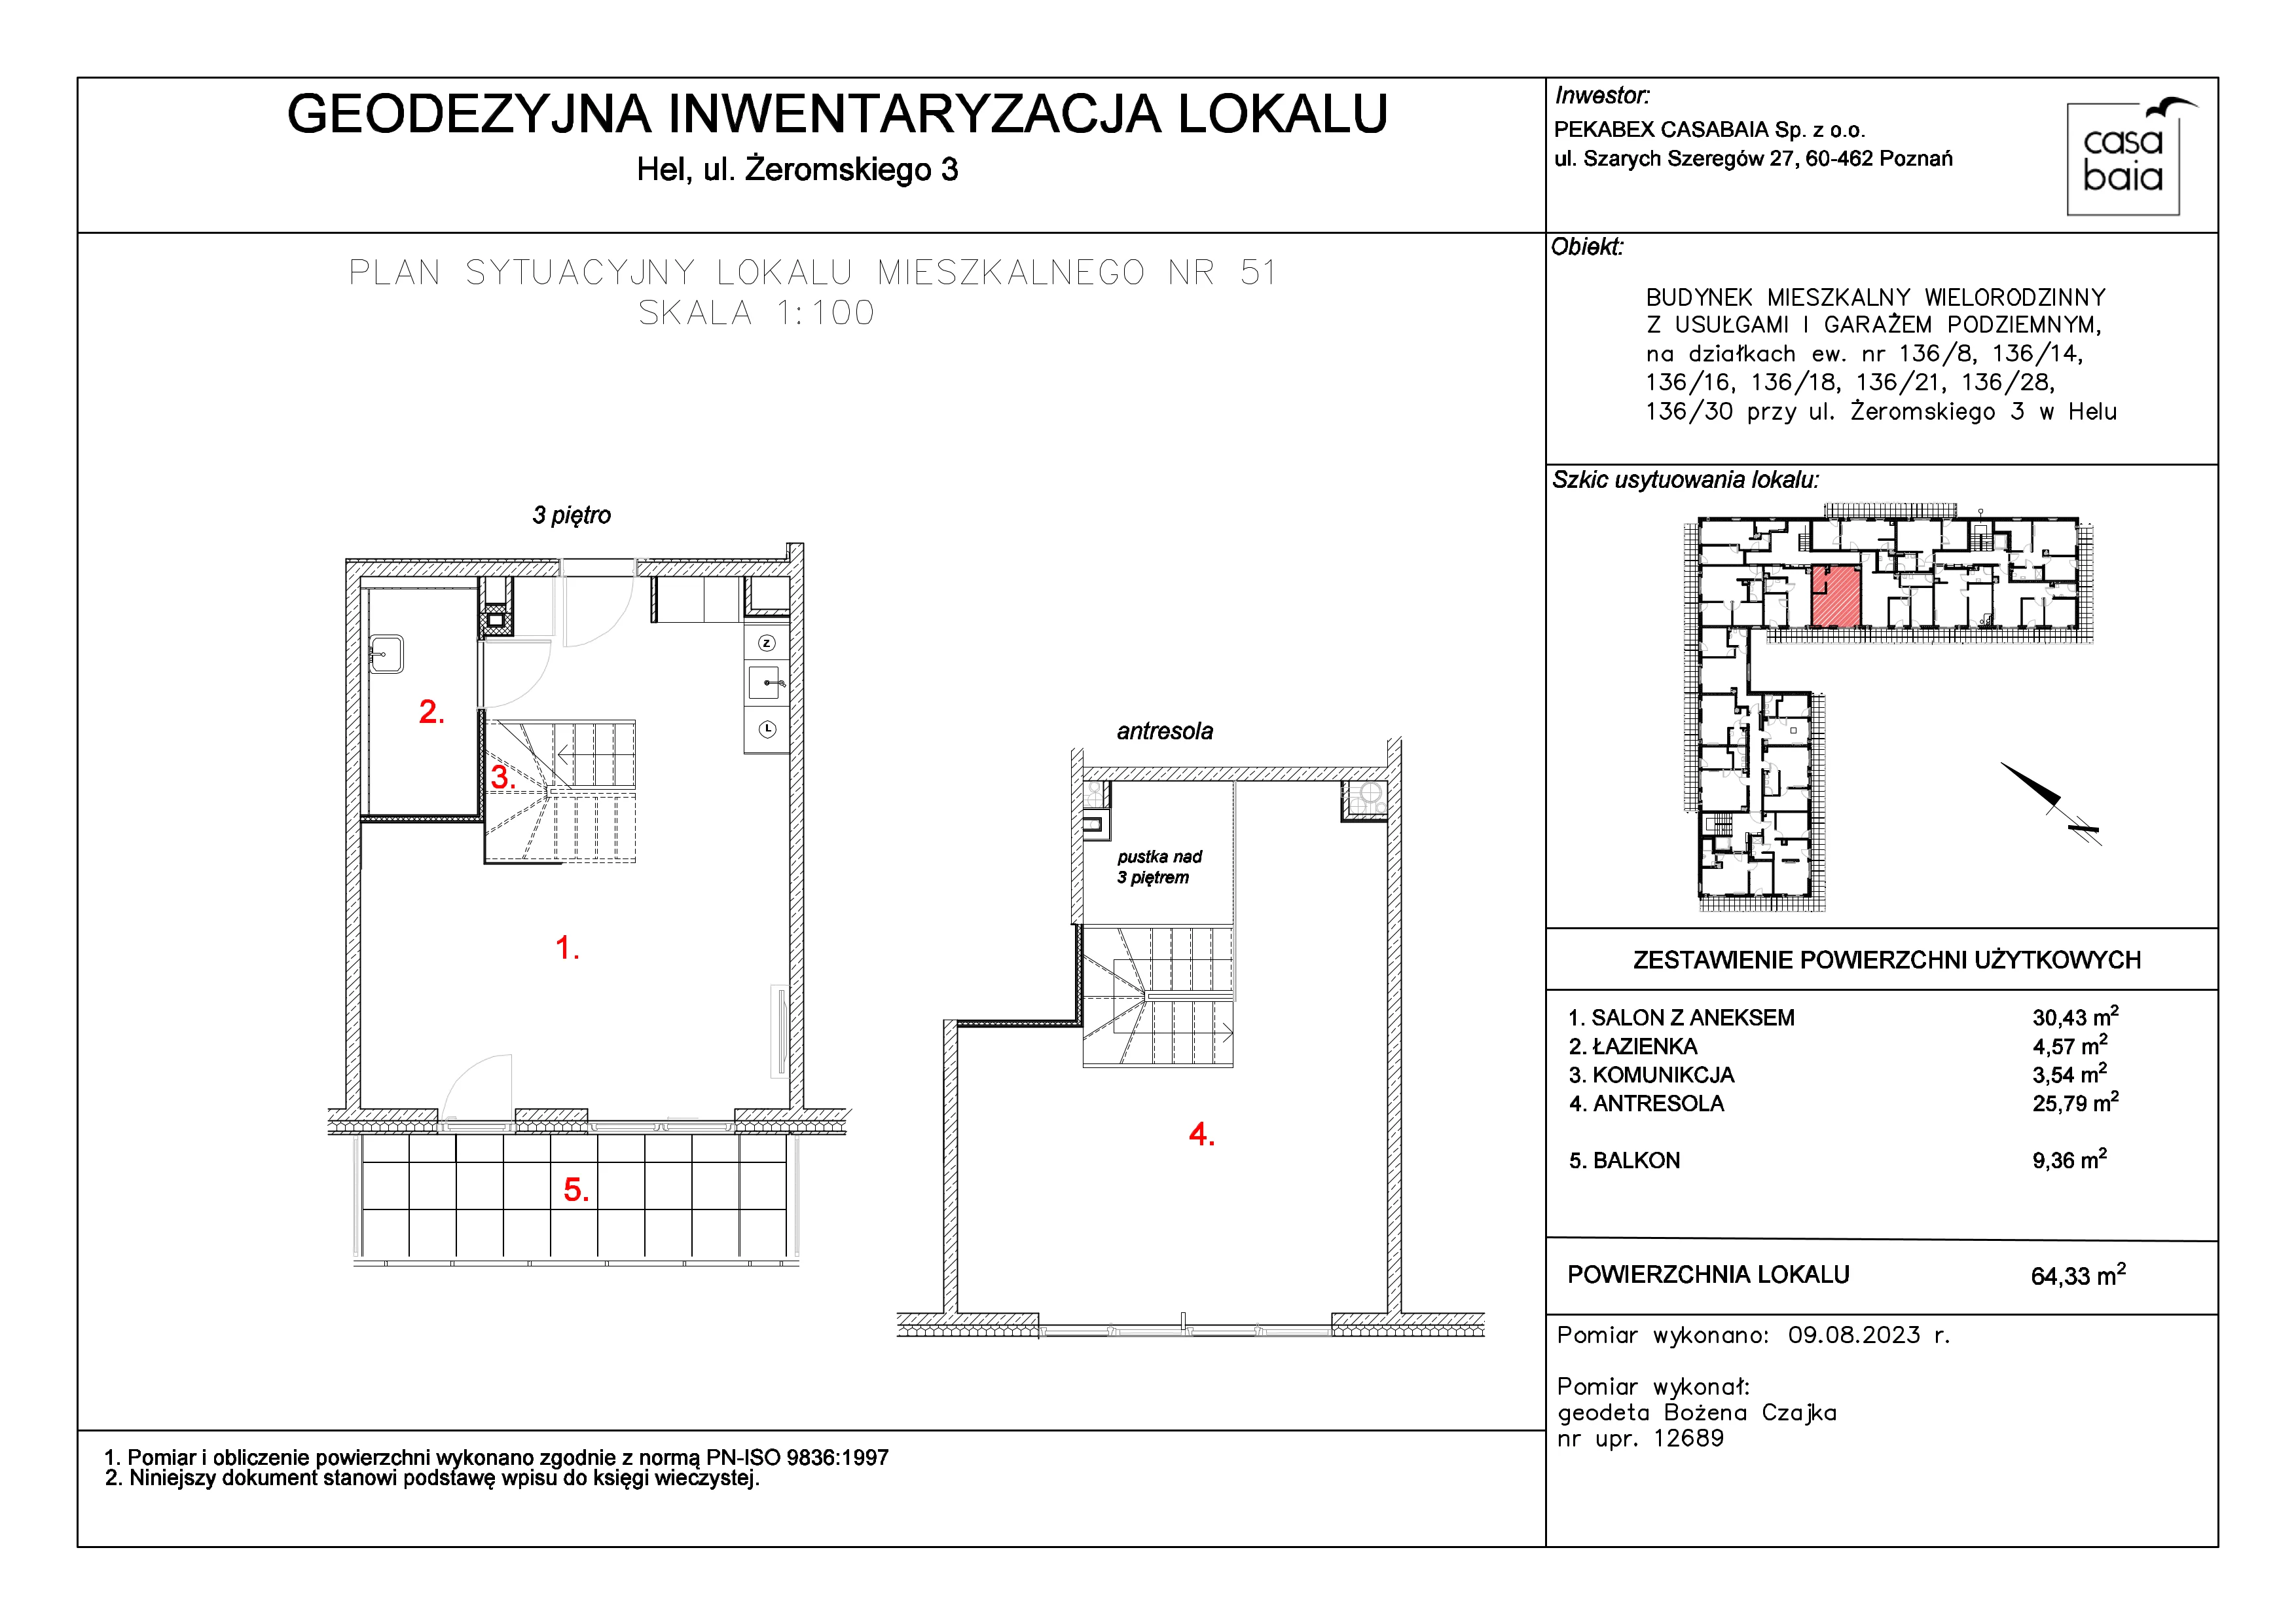 Mieszkanie 64,33 m², piętro 3, oferta nr G4, CASA BAIA, Hel, ul. Stefana Żeromskiego 3